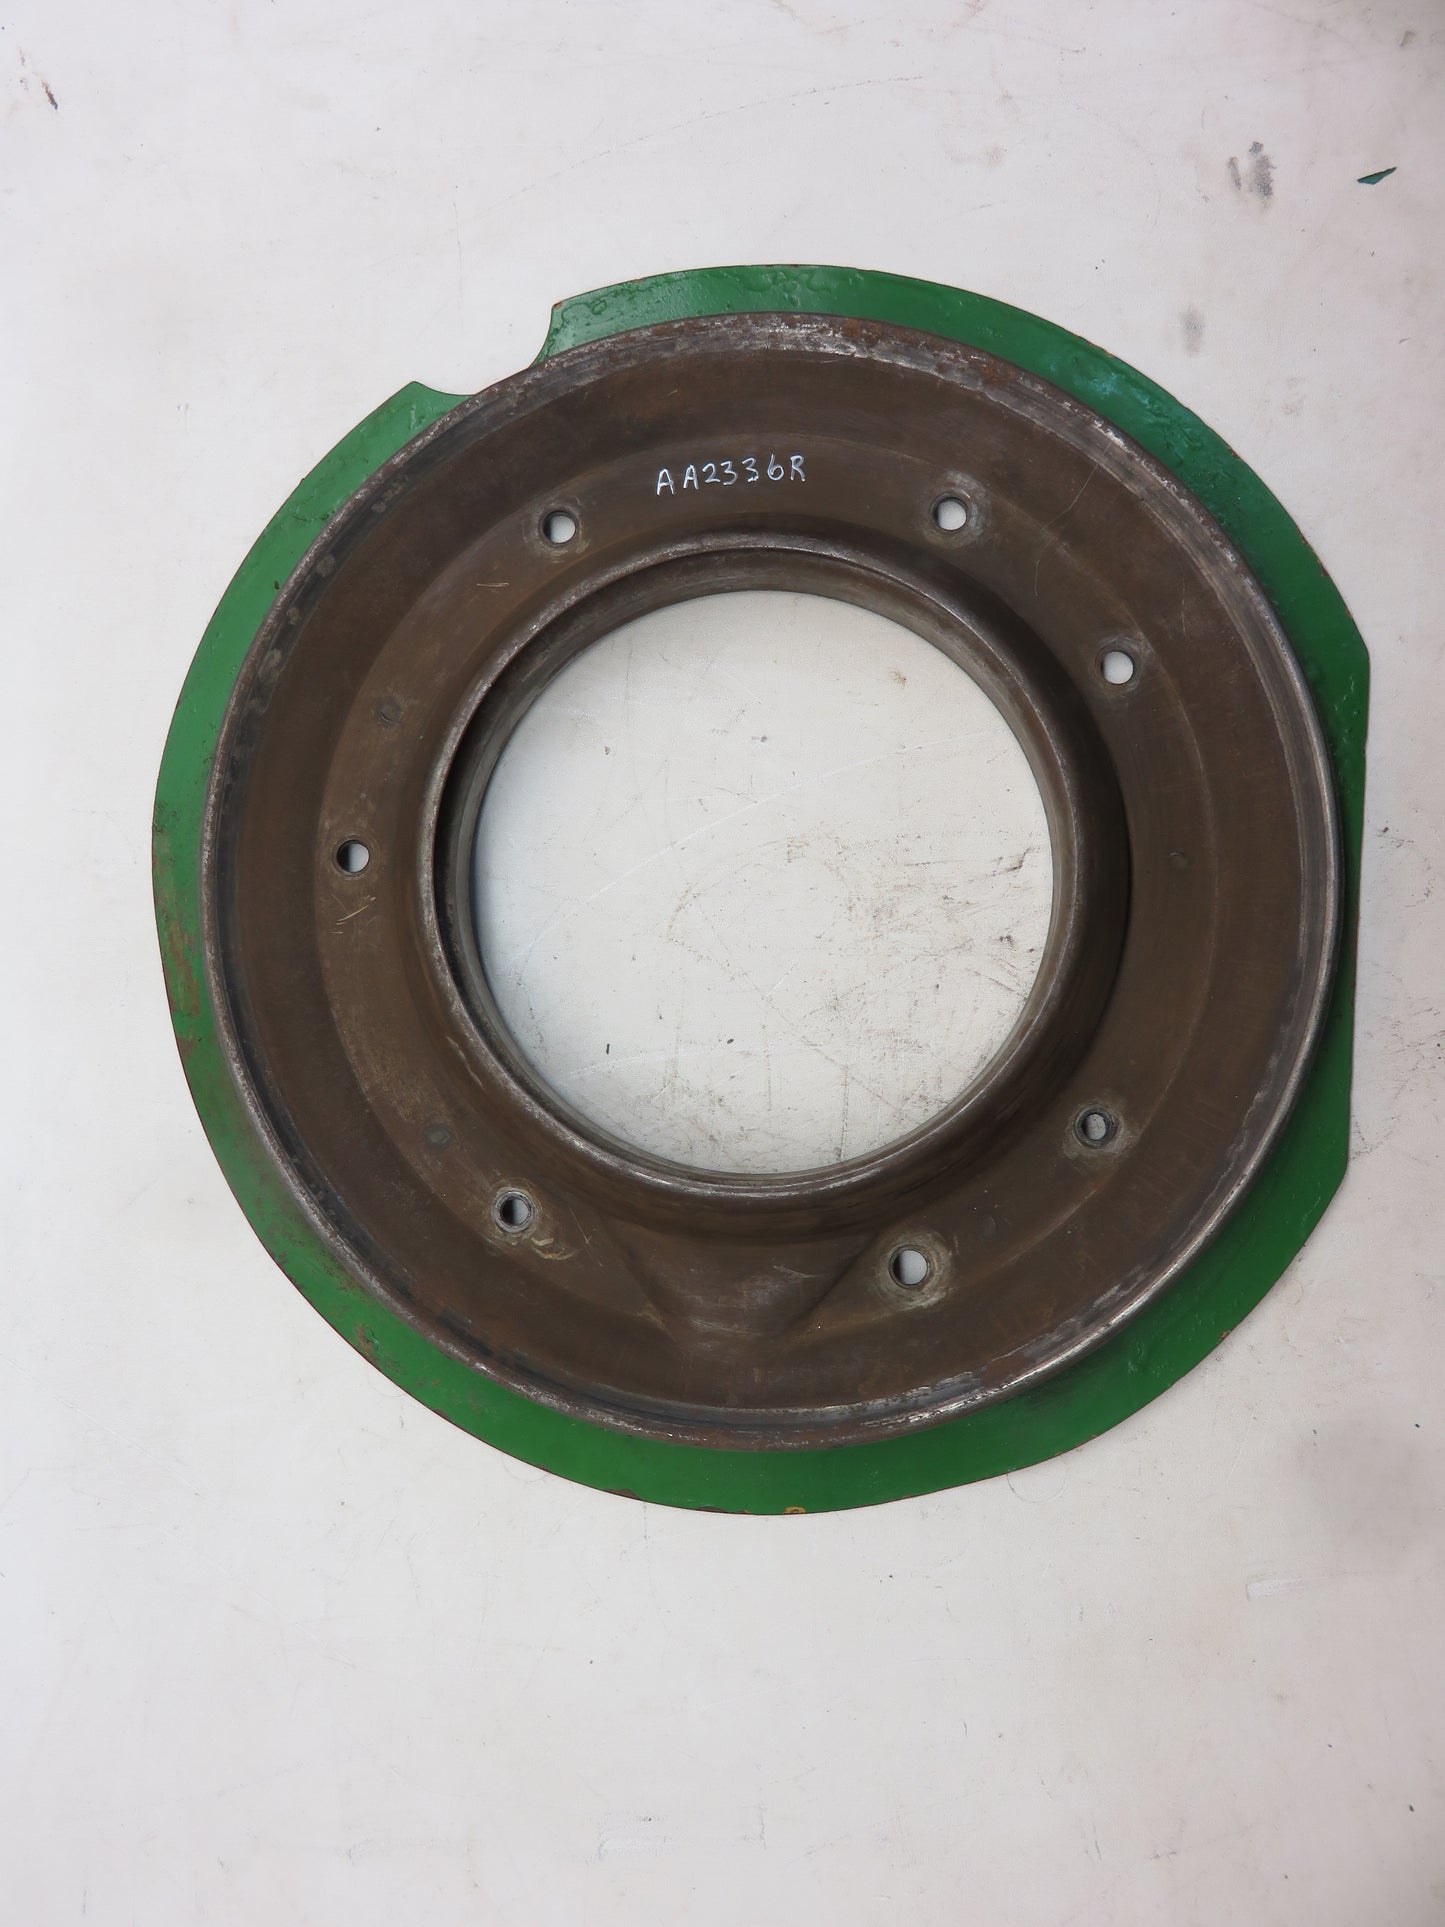 AA2336R John Deere Clutch Pulley Dust Shield For A, AR, AO